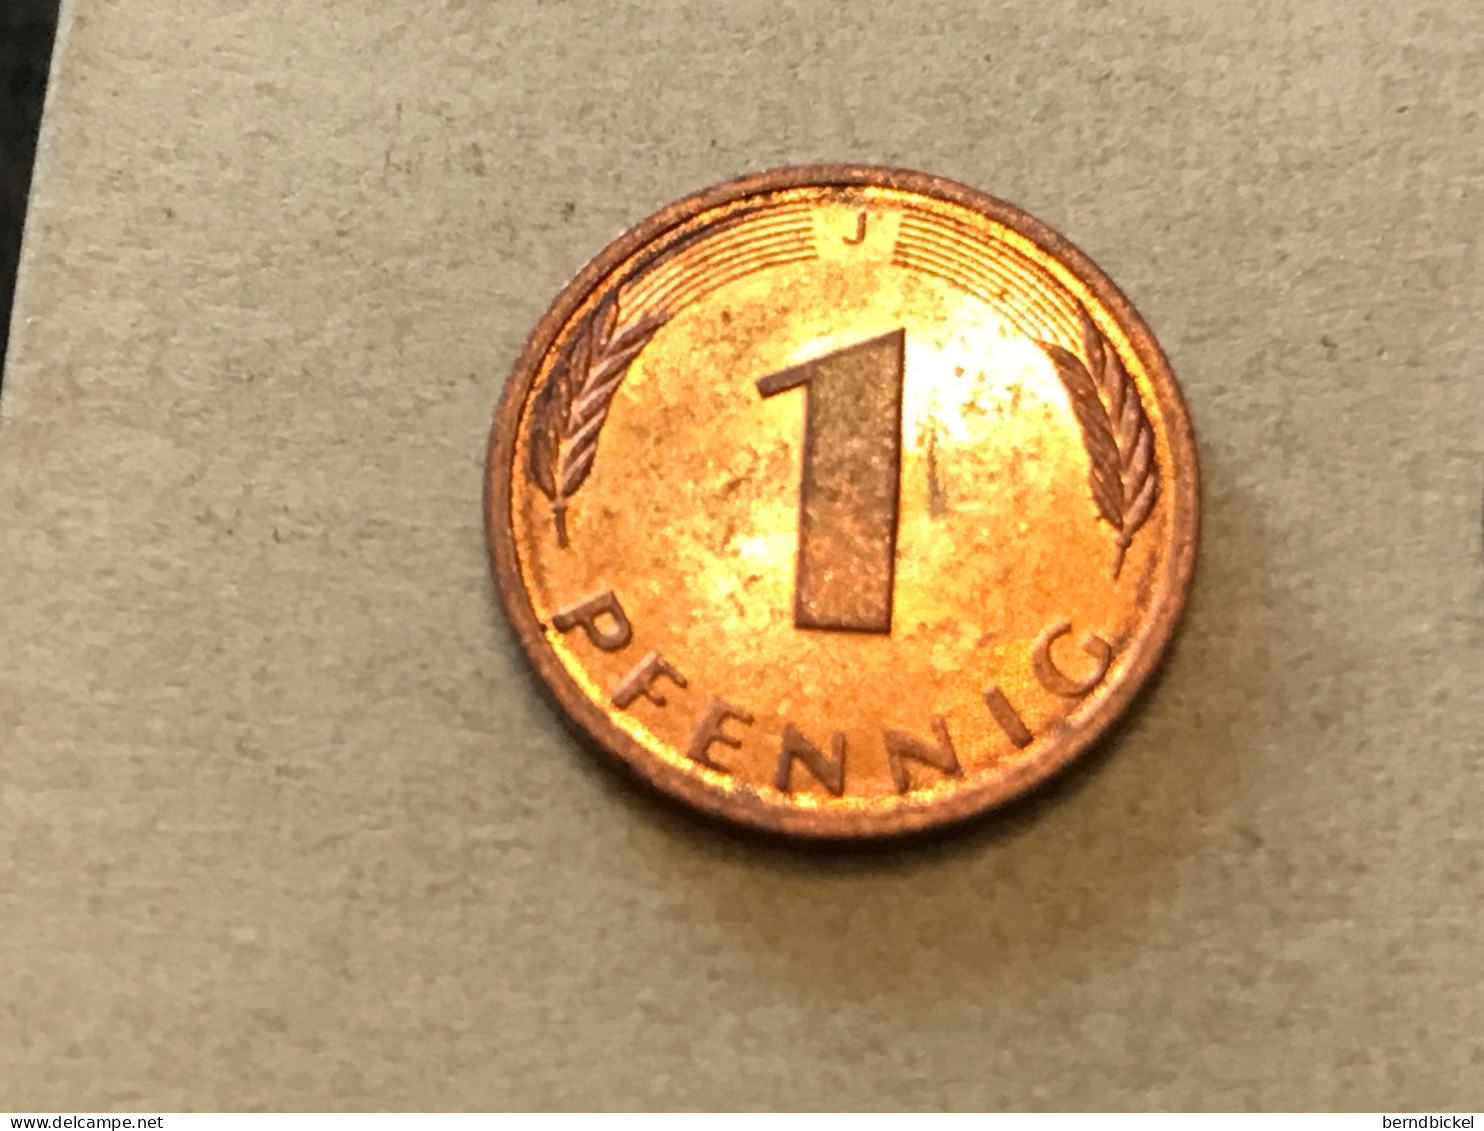 Münze Münzen Umlaufmünze Deutschland BRD 1 Pfennig 1987 Münzzeichen J - 1 Pfennig